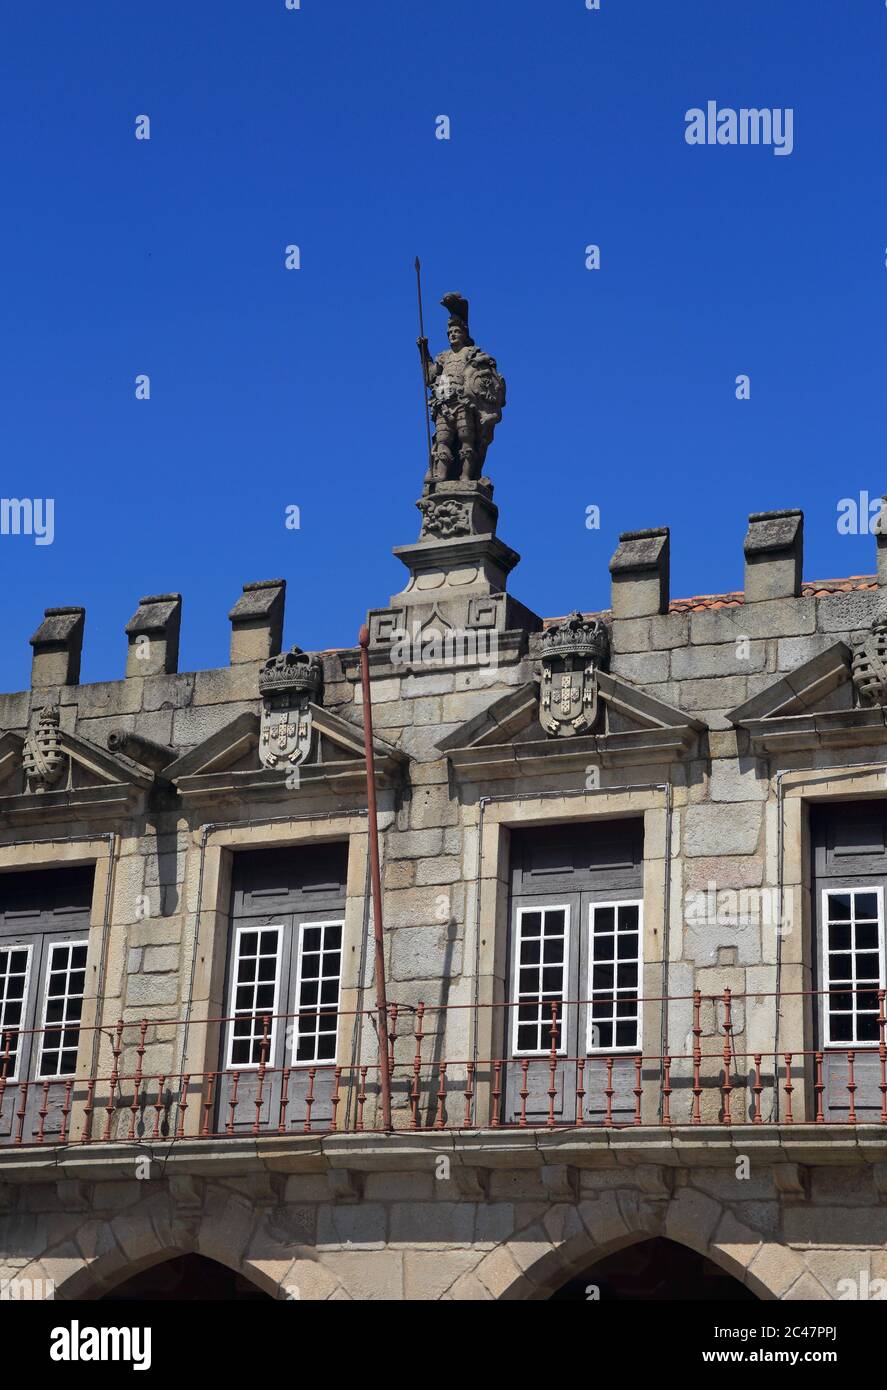 Particolare architettonico della medievale Piazza Oliveira - Largo da Oliveira, nel centro storico di Guimaraes, regione di Minho, Portogallo. Sito UNESCO. Foto Stock